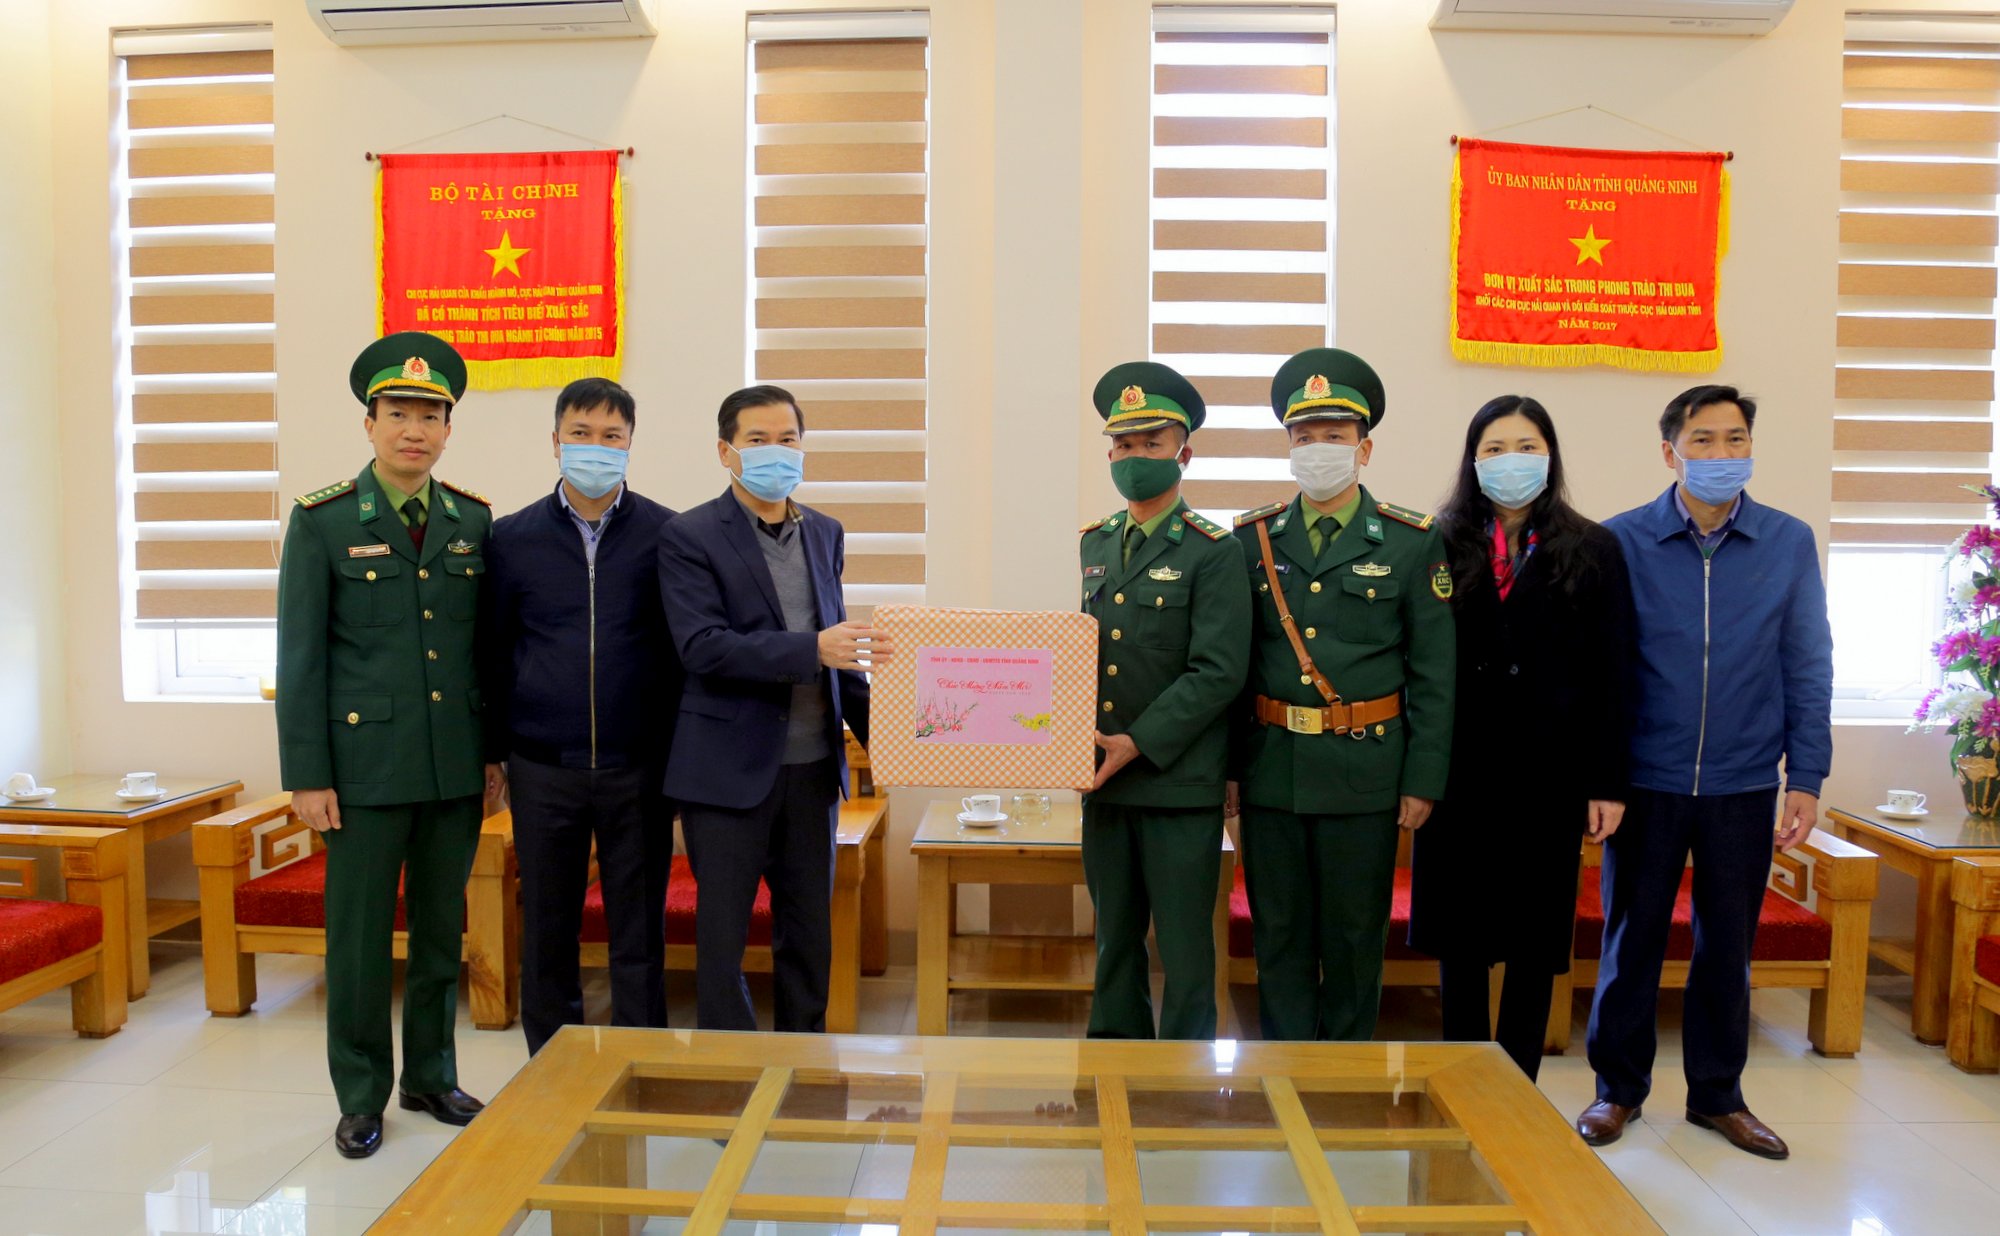 Phó Chủ tịch UBND tỉnh Bùi Văn Khắng tặng quà Tết cho CBCS các lực lượng làm nhiệm vụ tại Cửa Khẩu Hoành Mô (xã Hoành Mô, huyện Bình Liêu).